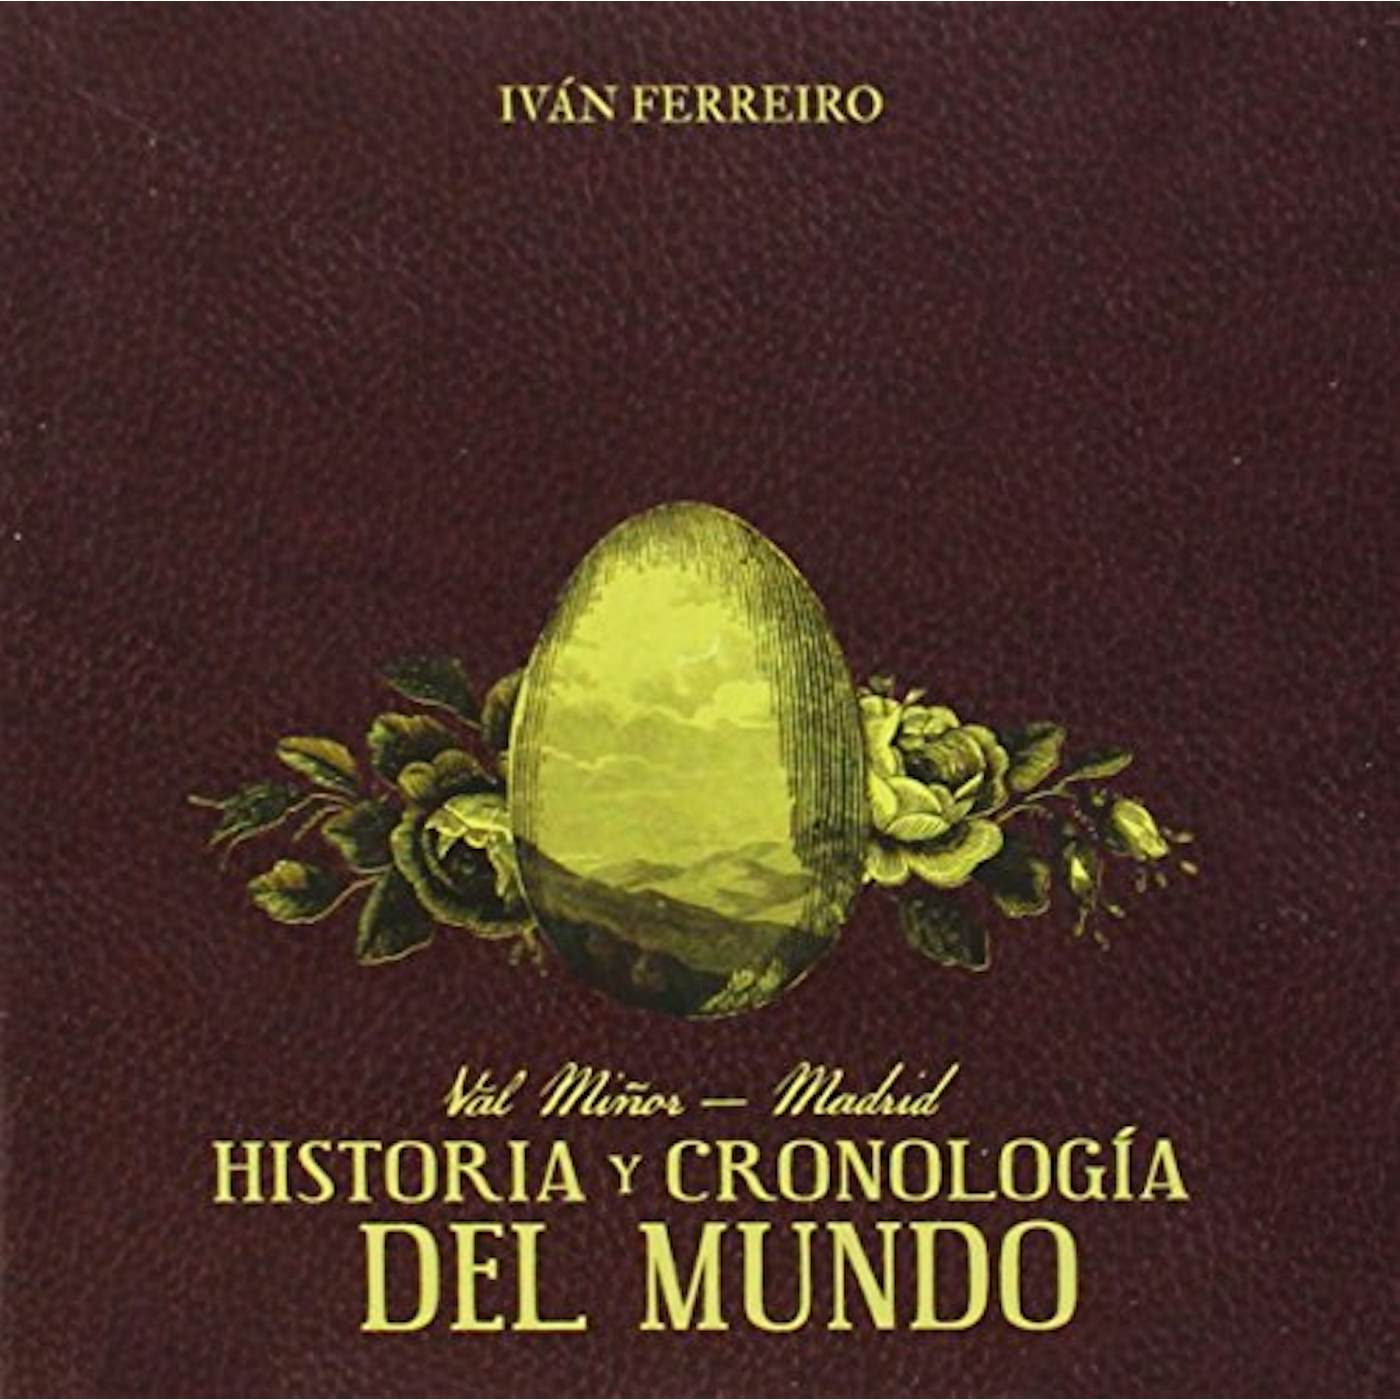 Ivan Ferreiro HISTORIA Y CRONOLOGIA DEL MUNDO CD